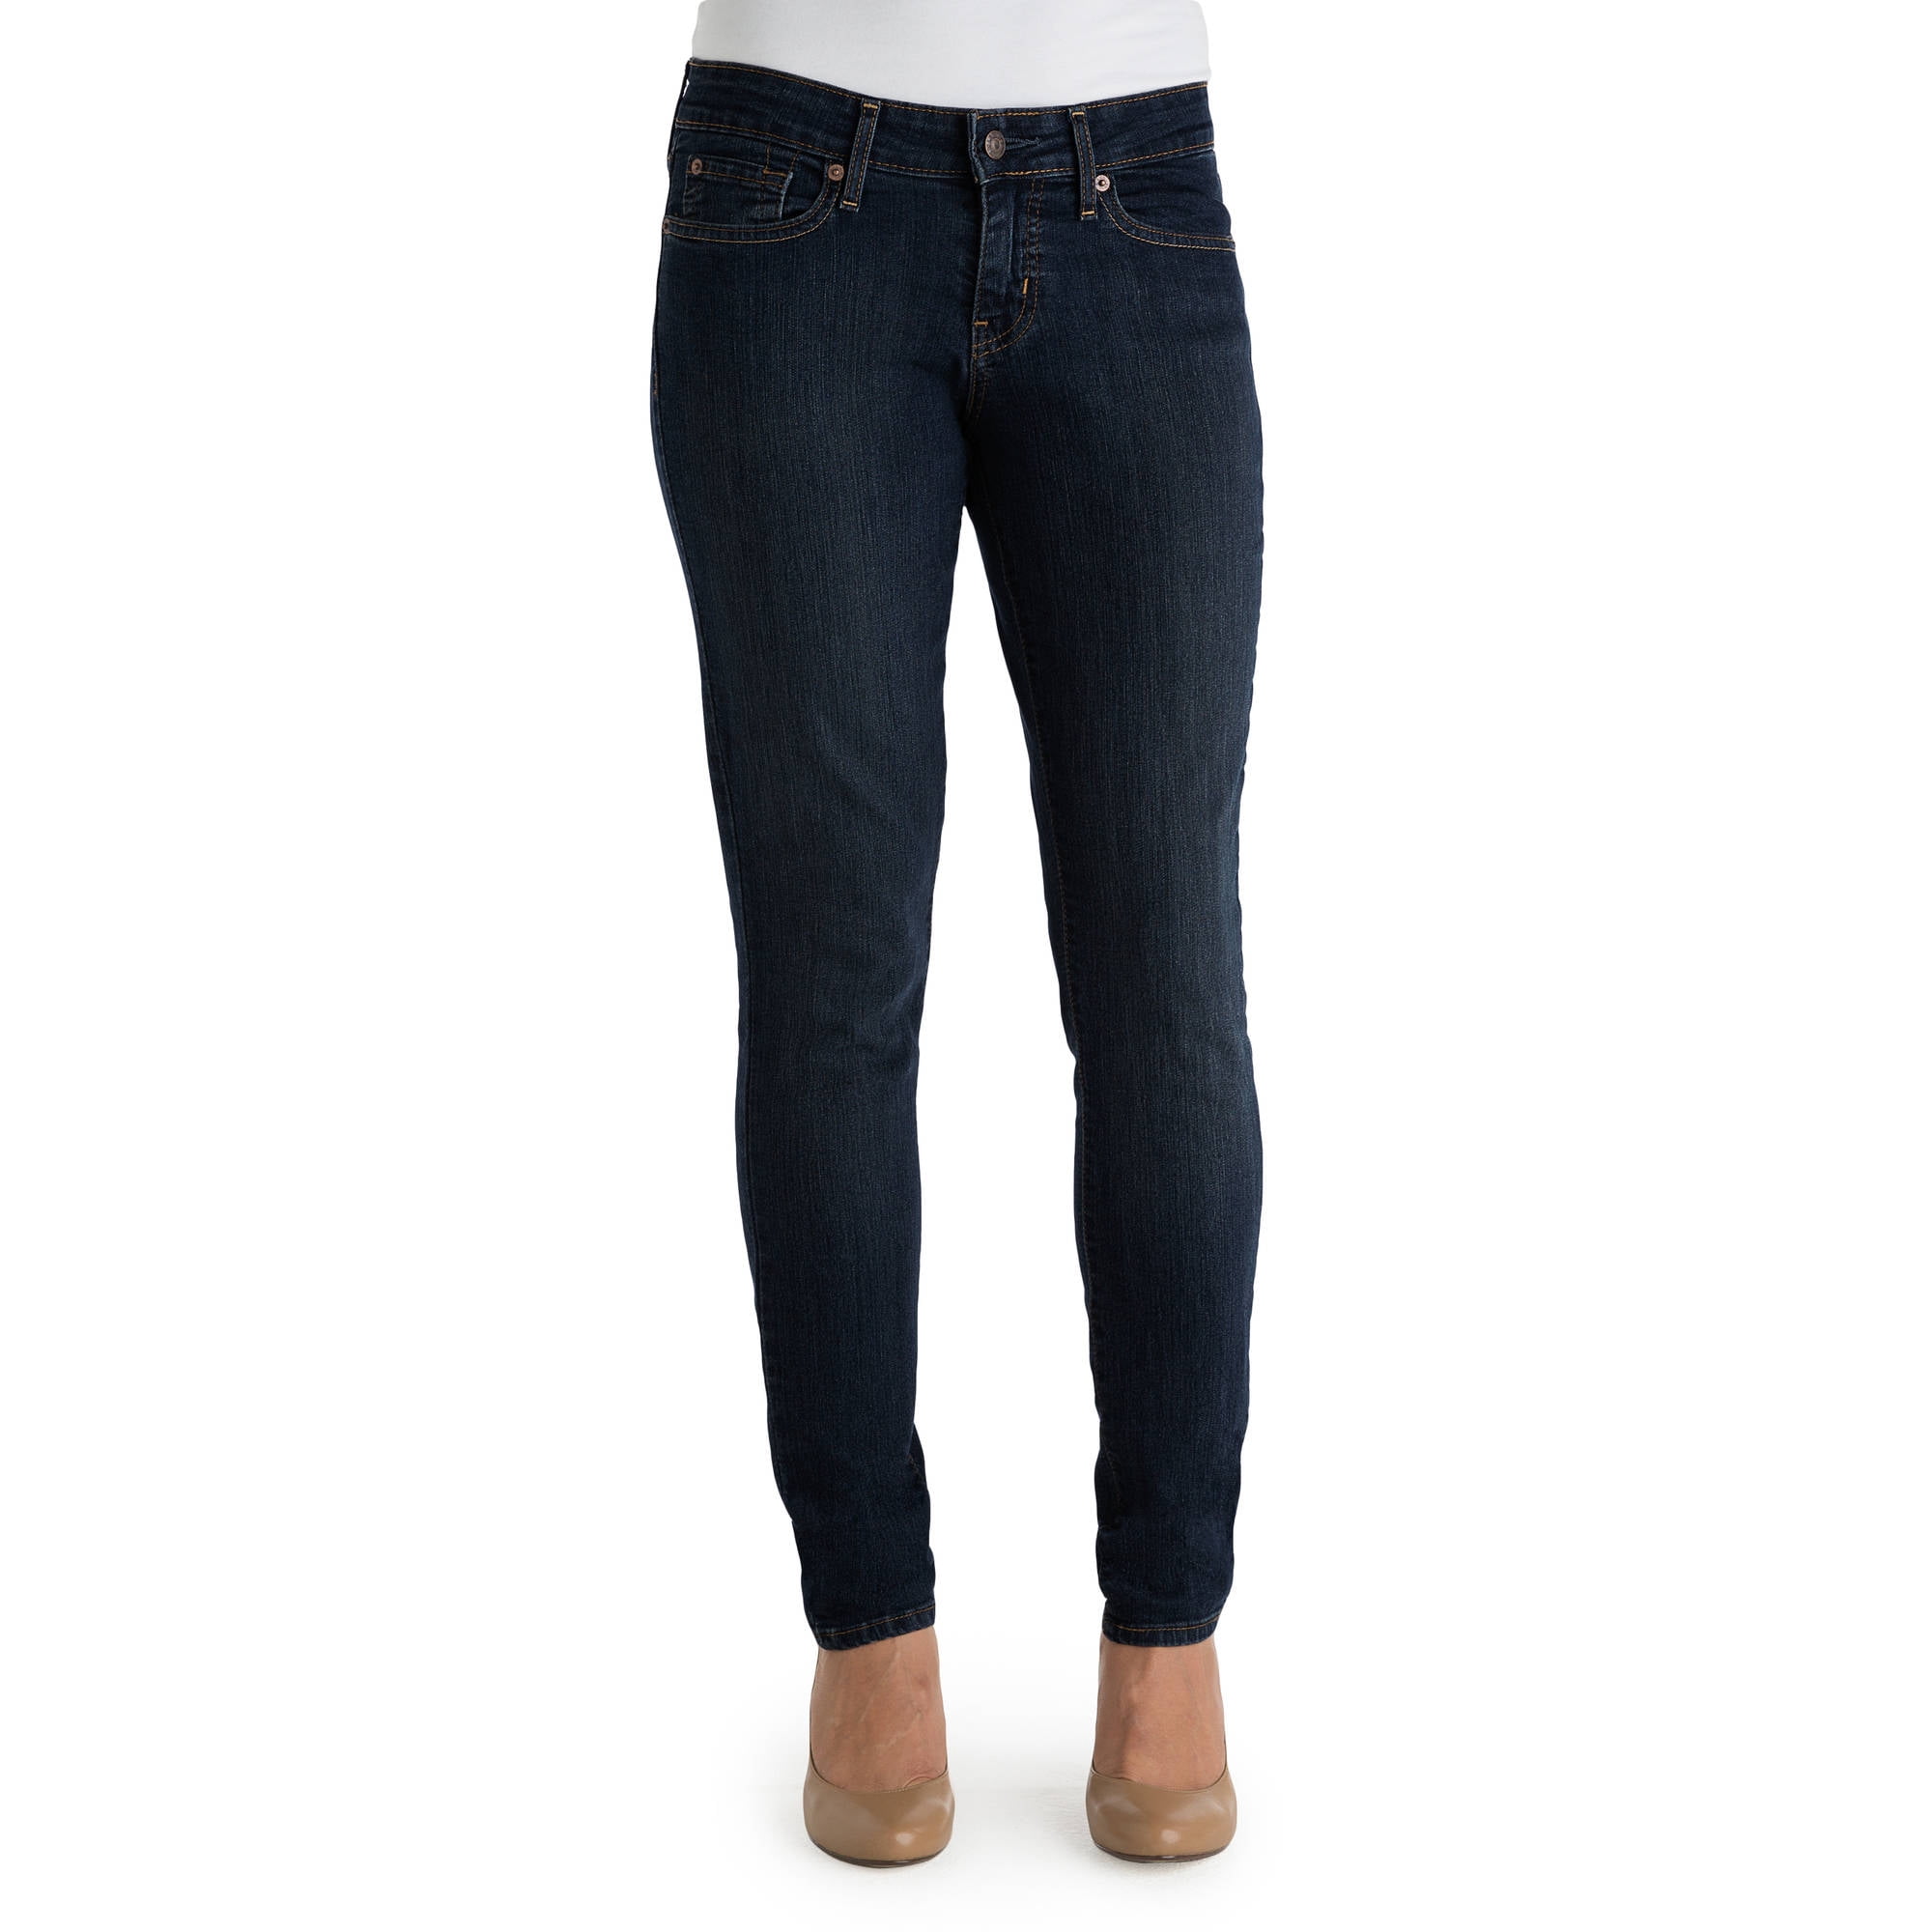 Modern Skinny Jeans - Walmart 